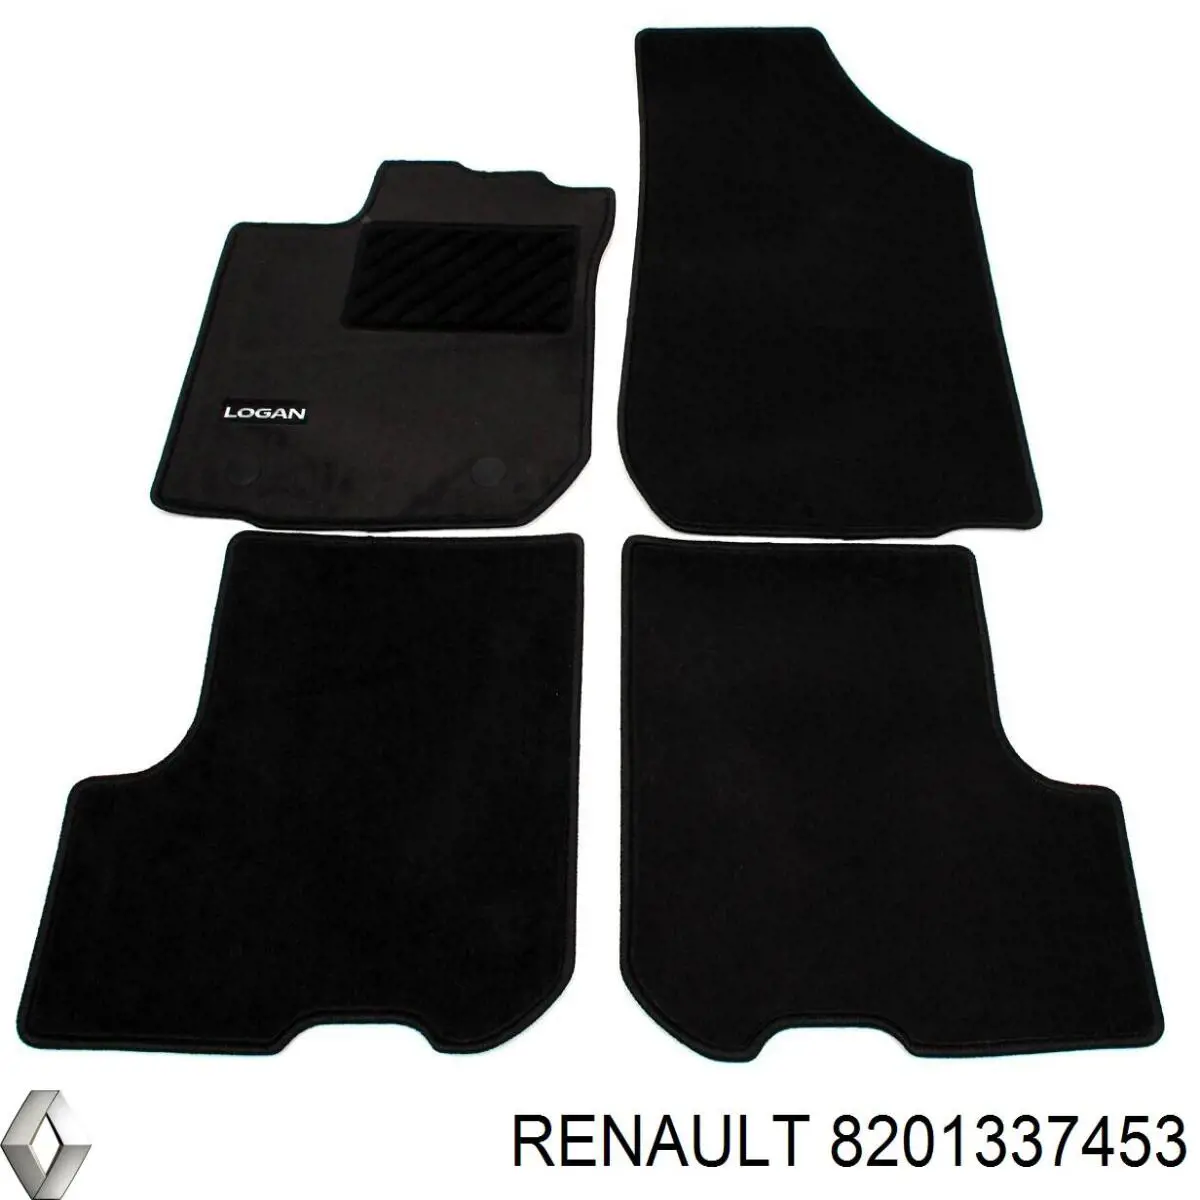 8201337452 Renault (RVI) килимок передні + задні, комплект на авто